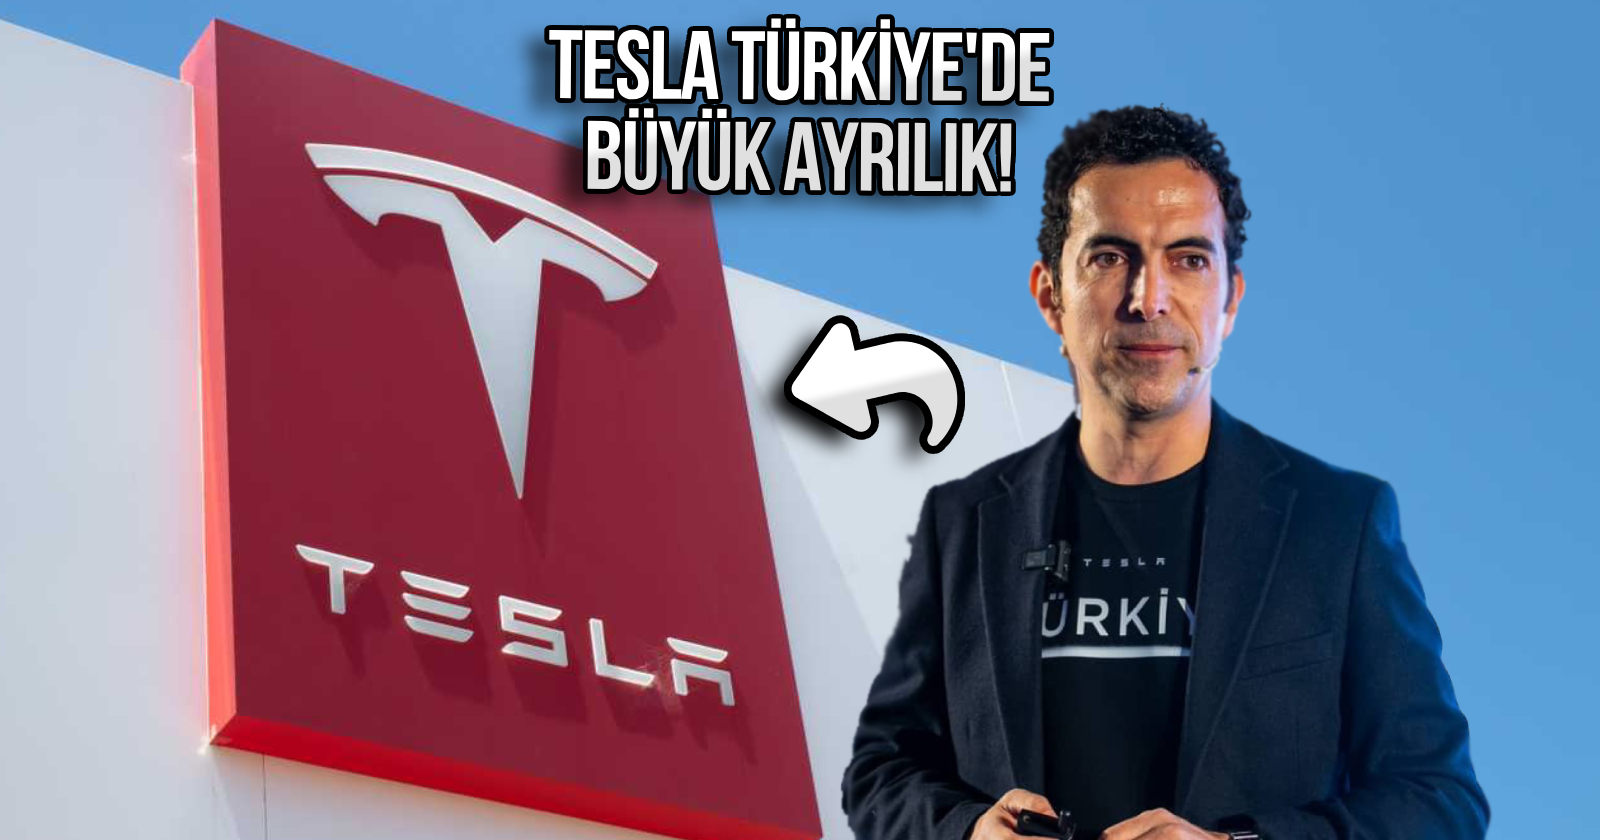 Kemal Geçer ayrılık mesajı, Tesla Türkiye Genel müdürü, Tesla Türkiye istifa, Tesla Türkiye ayrılık